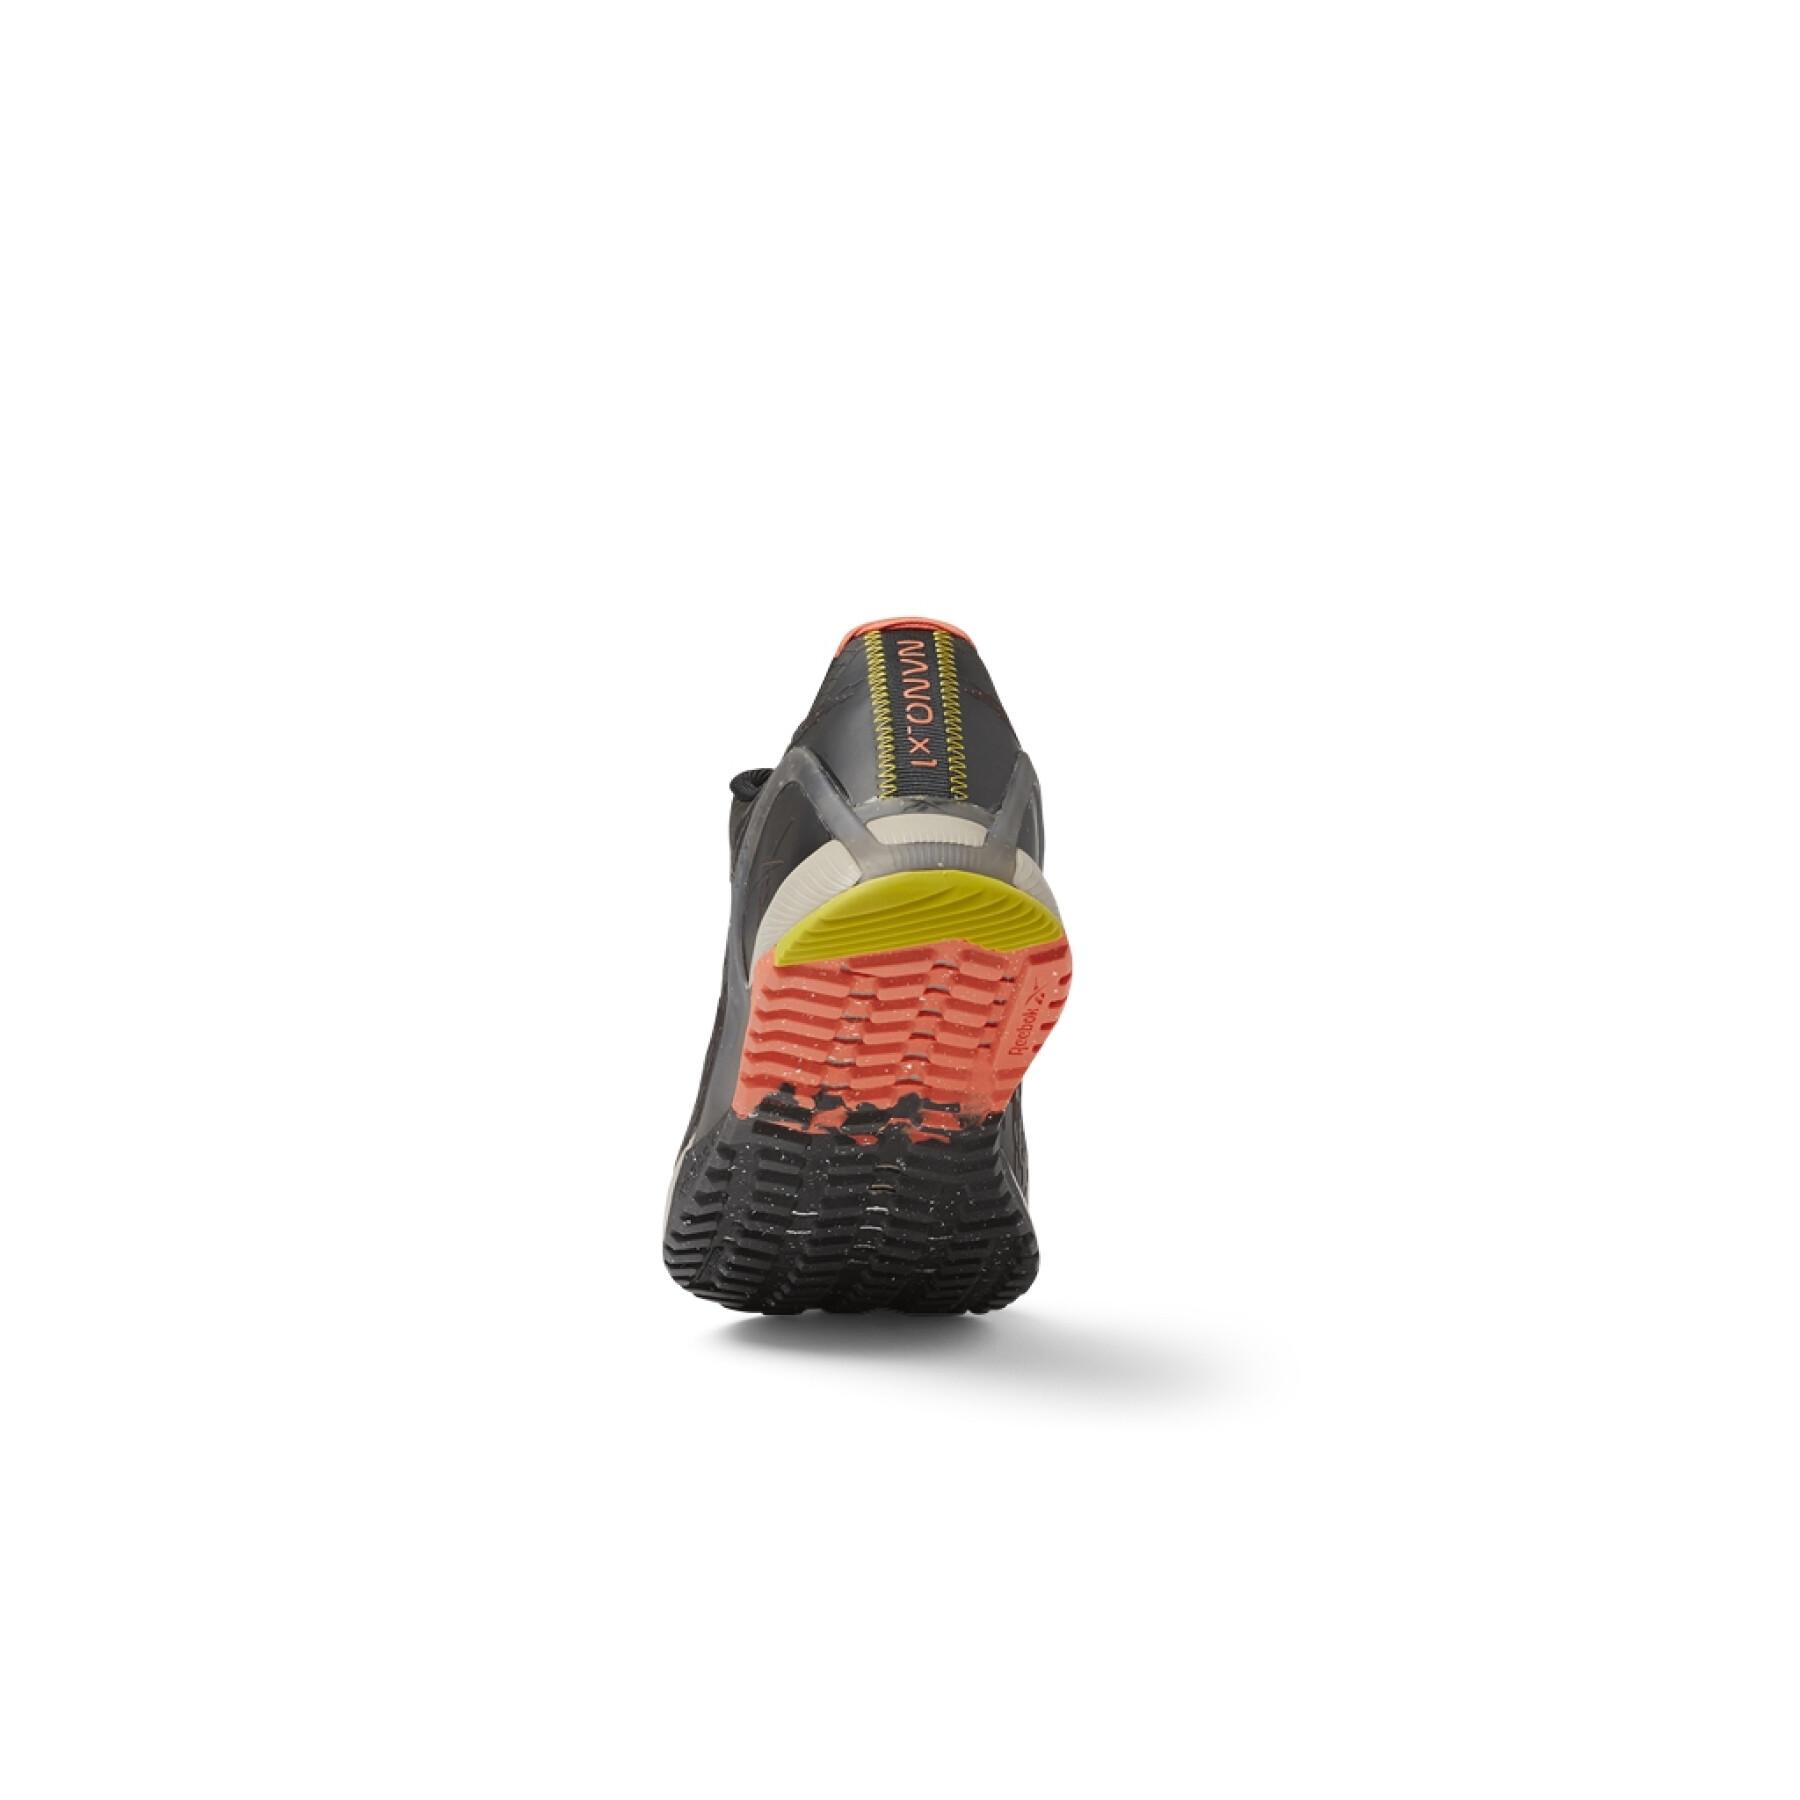 Schuhe Reebok Nano X1 TR Adventure